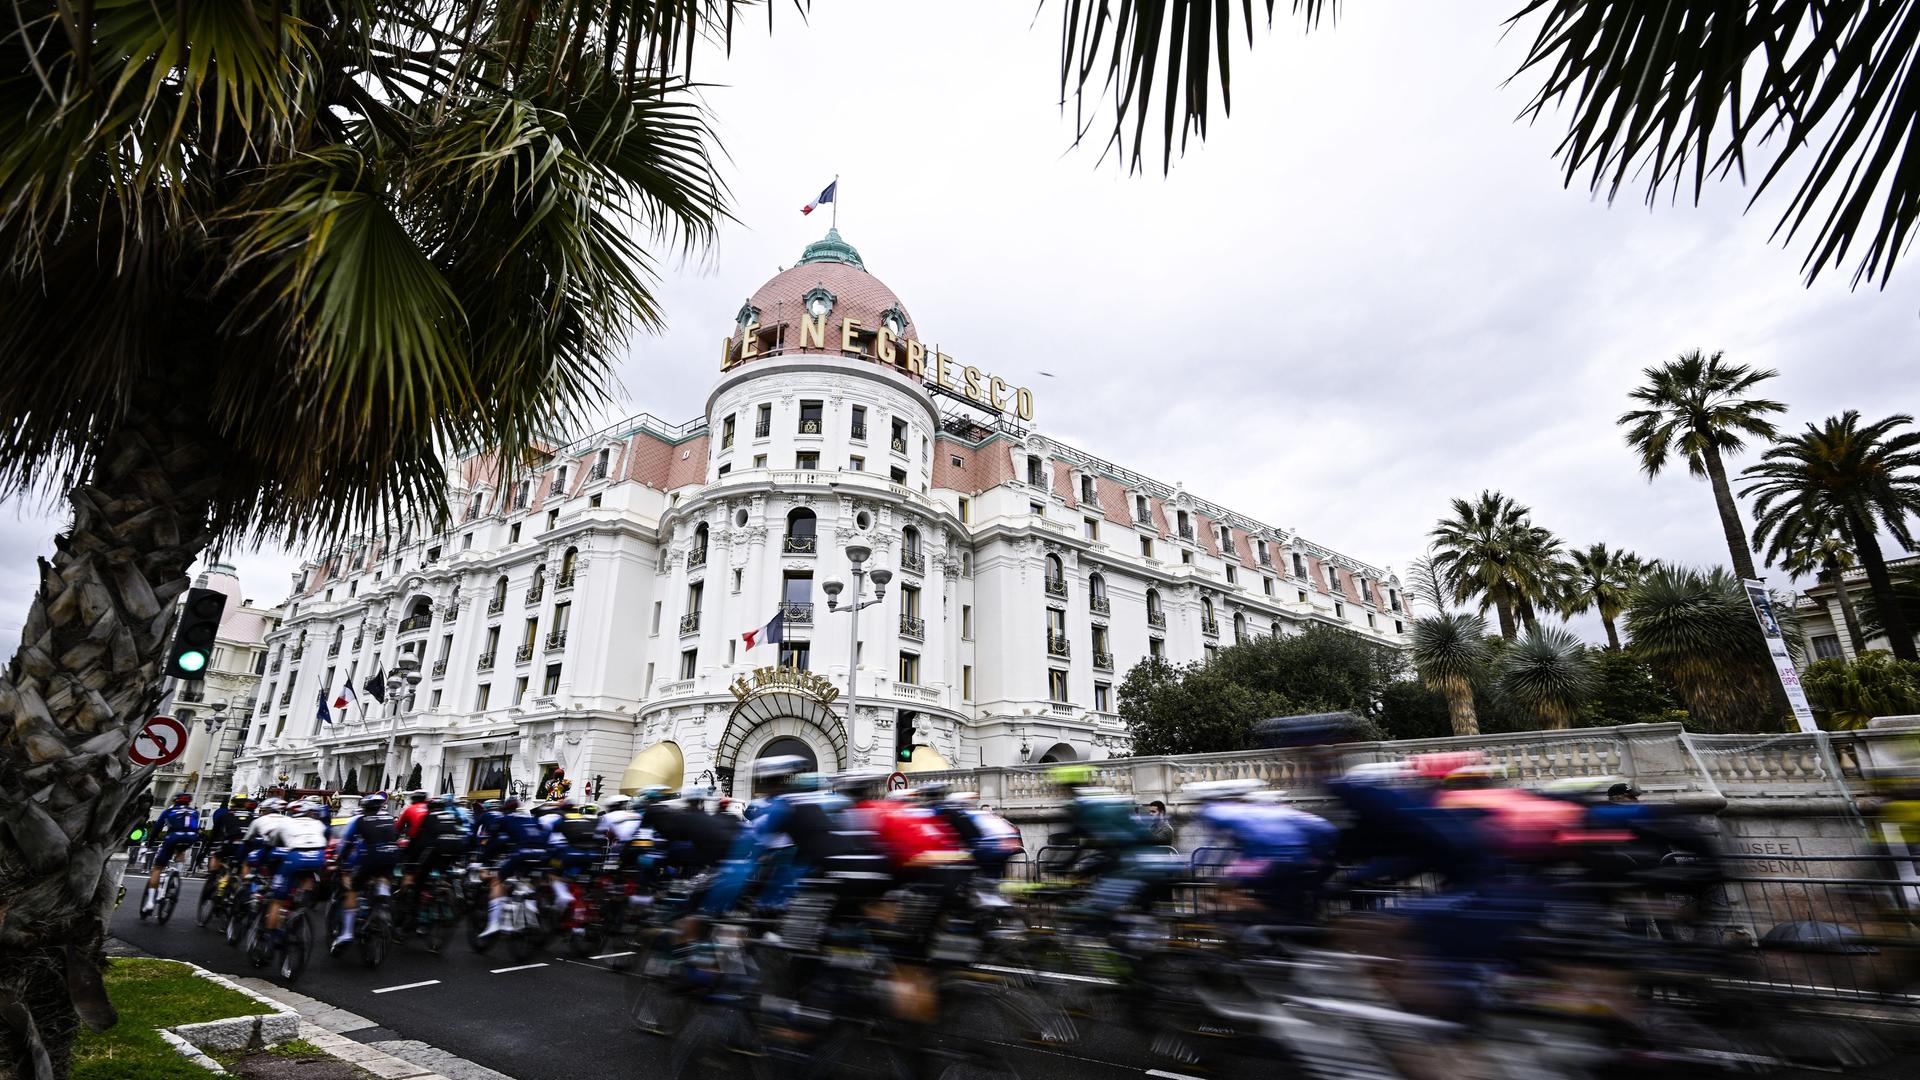 Das Foto zeigt den Start der siebten Etappe des achttägigen Radrennens Paris-Nizza an der Uferpromenade Promenade des Anglais in Nizza. Radfahrer sind verschwommen zu sehen. Im Hintergrund steht das bekannte Hotel Negresco.  